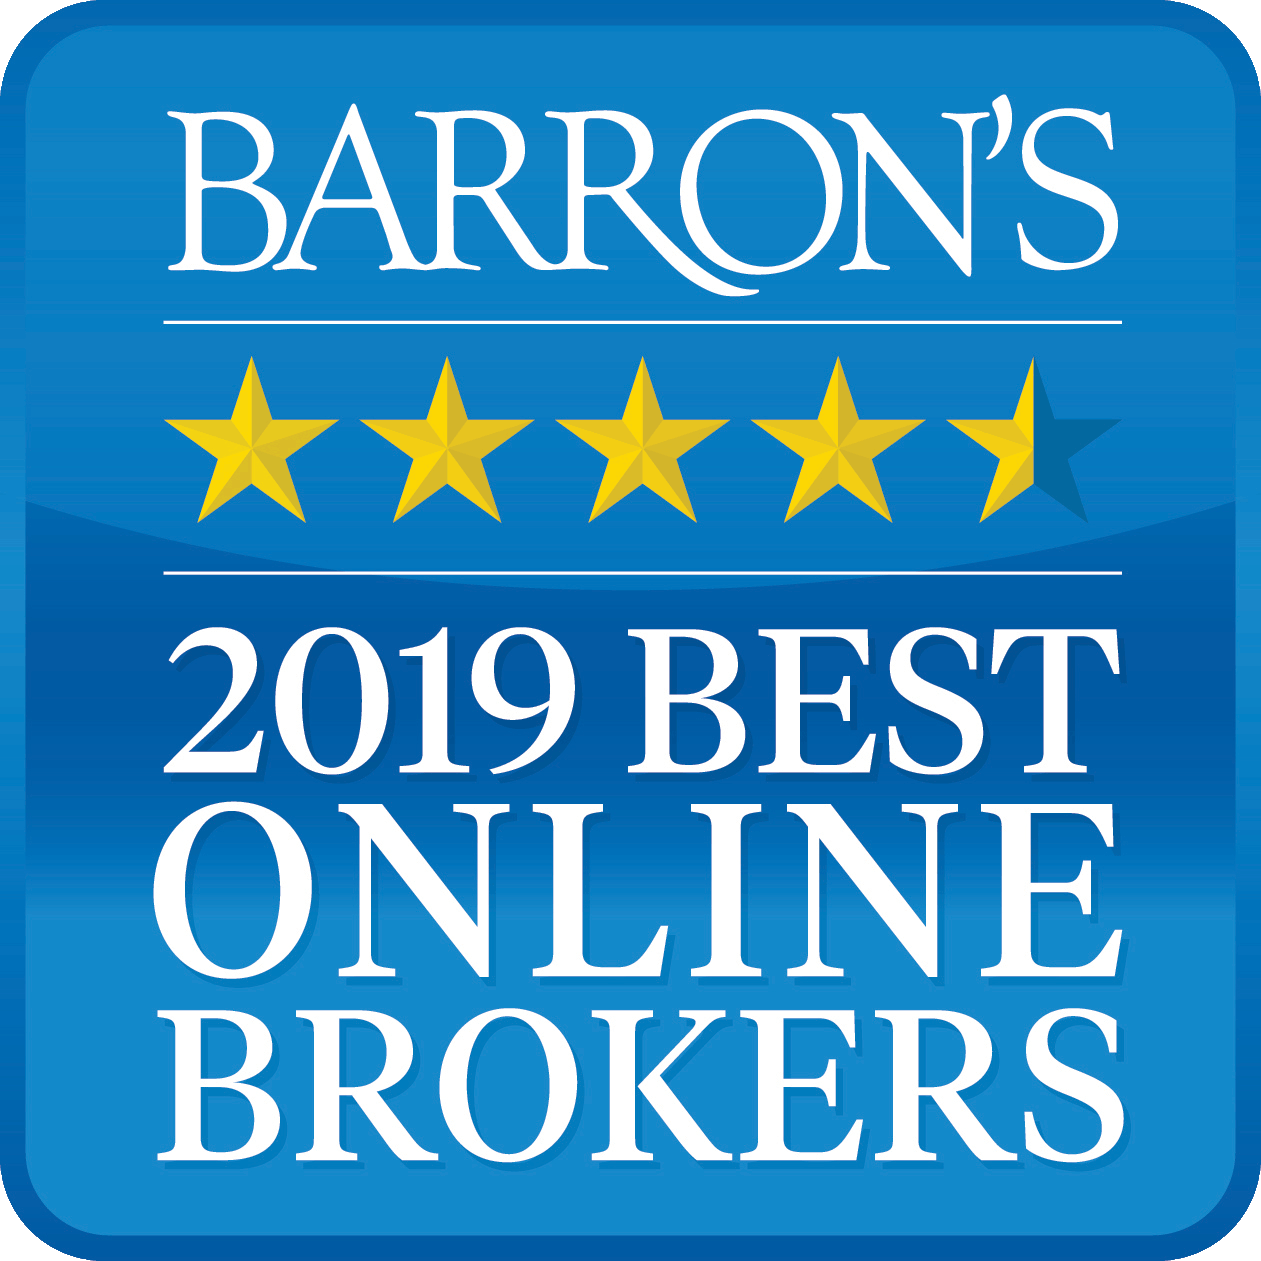 Interactive Brokers est numéro 1 dans la catégorie Meilleur courtier en ligne 2019 selon Barron's